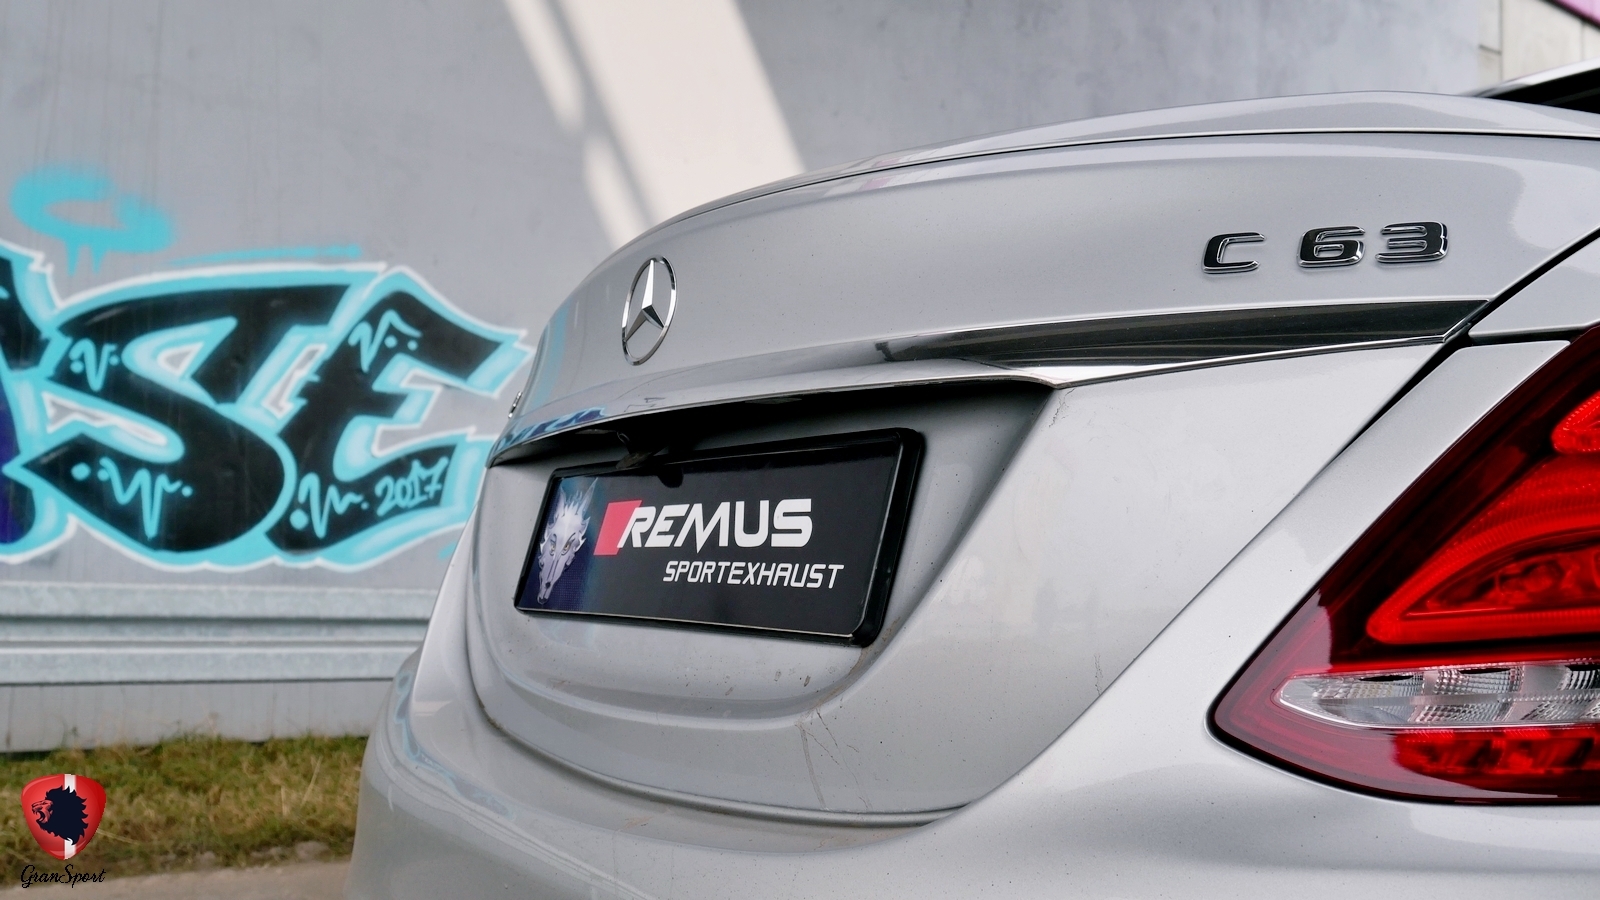 Mercedes-AMG C63 Remus